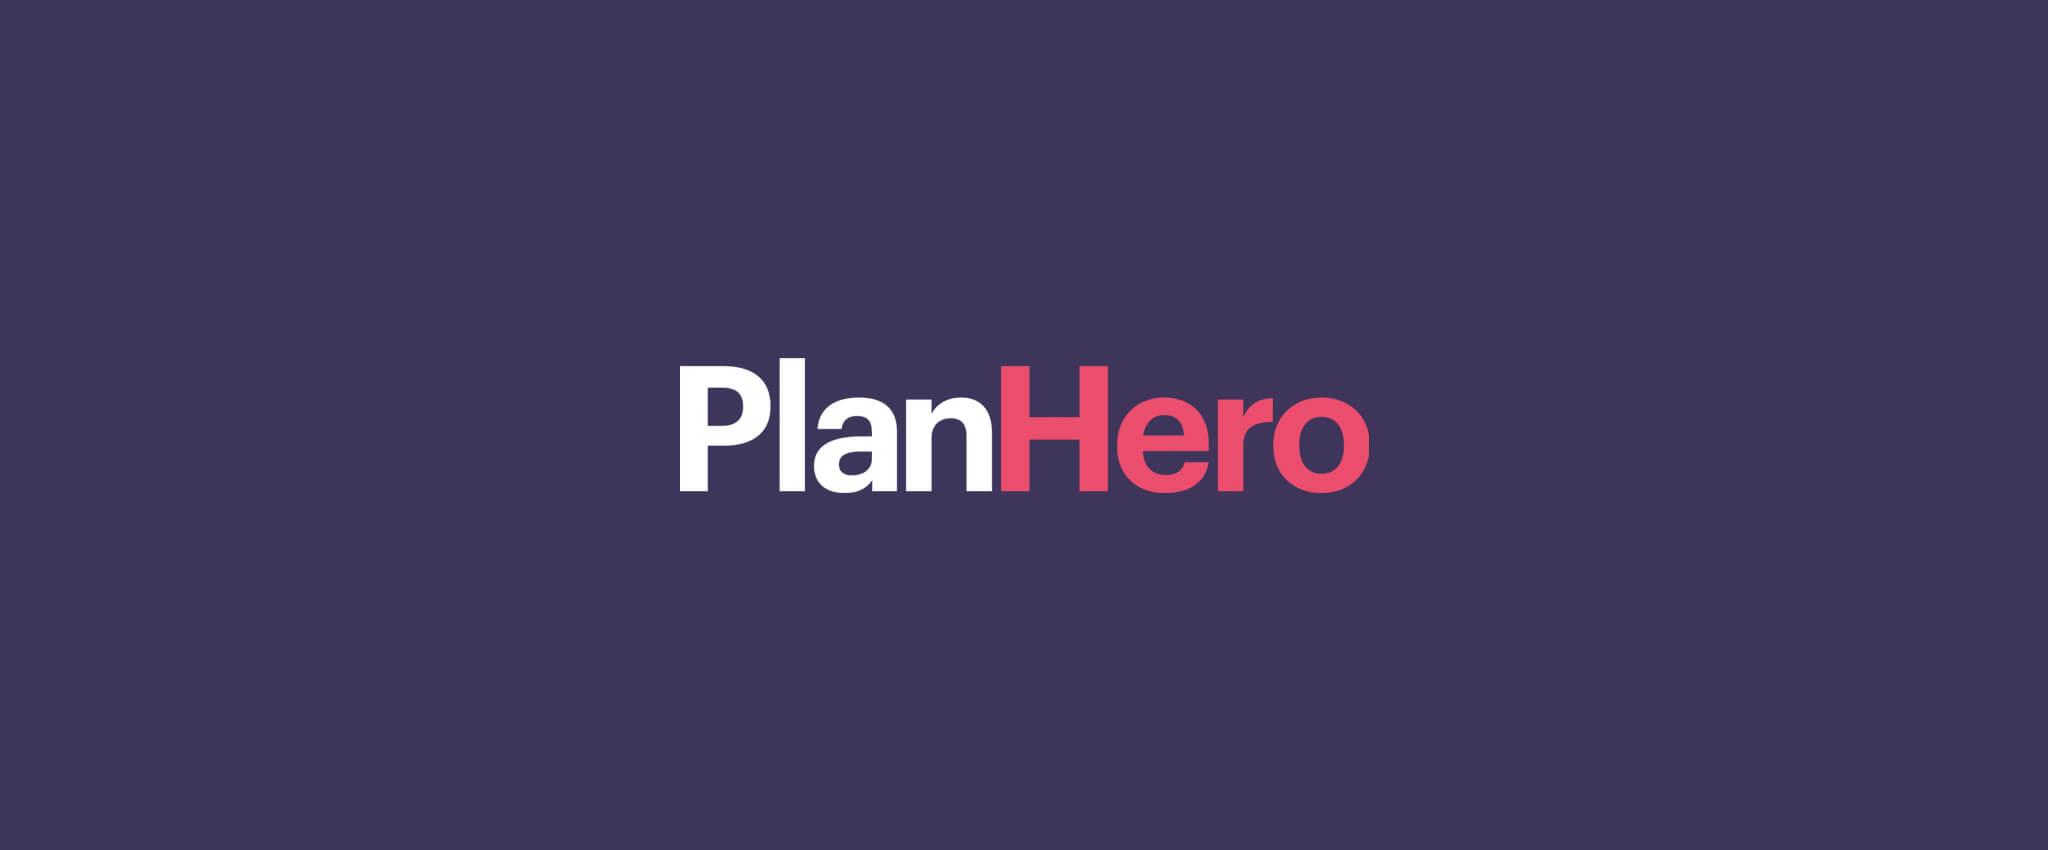 MomClone new name PlanHero